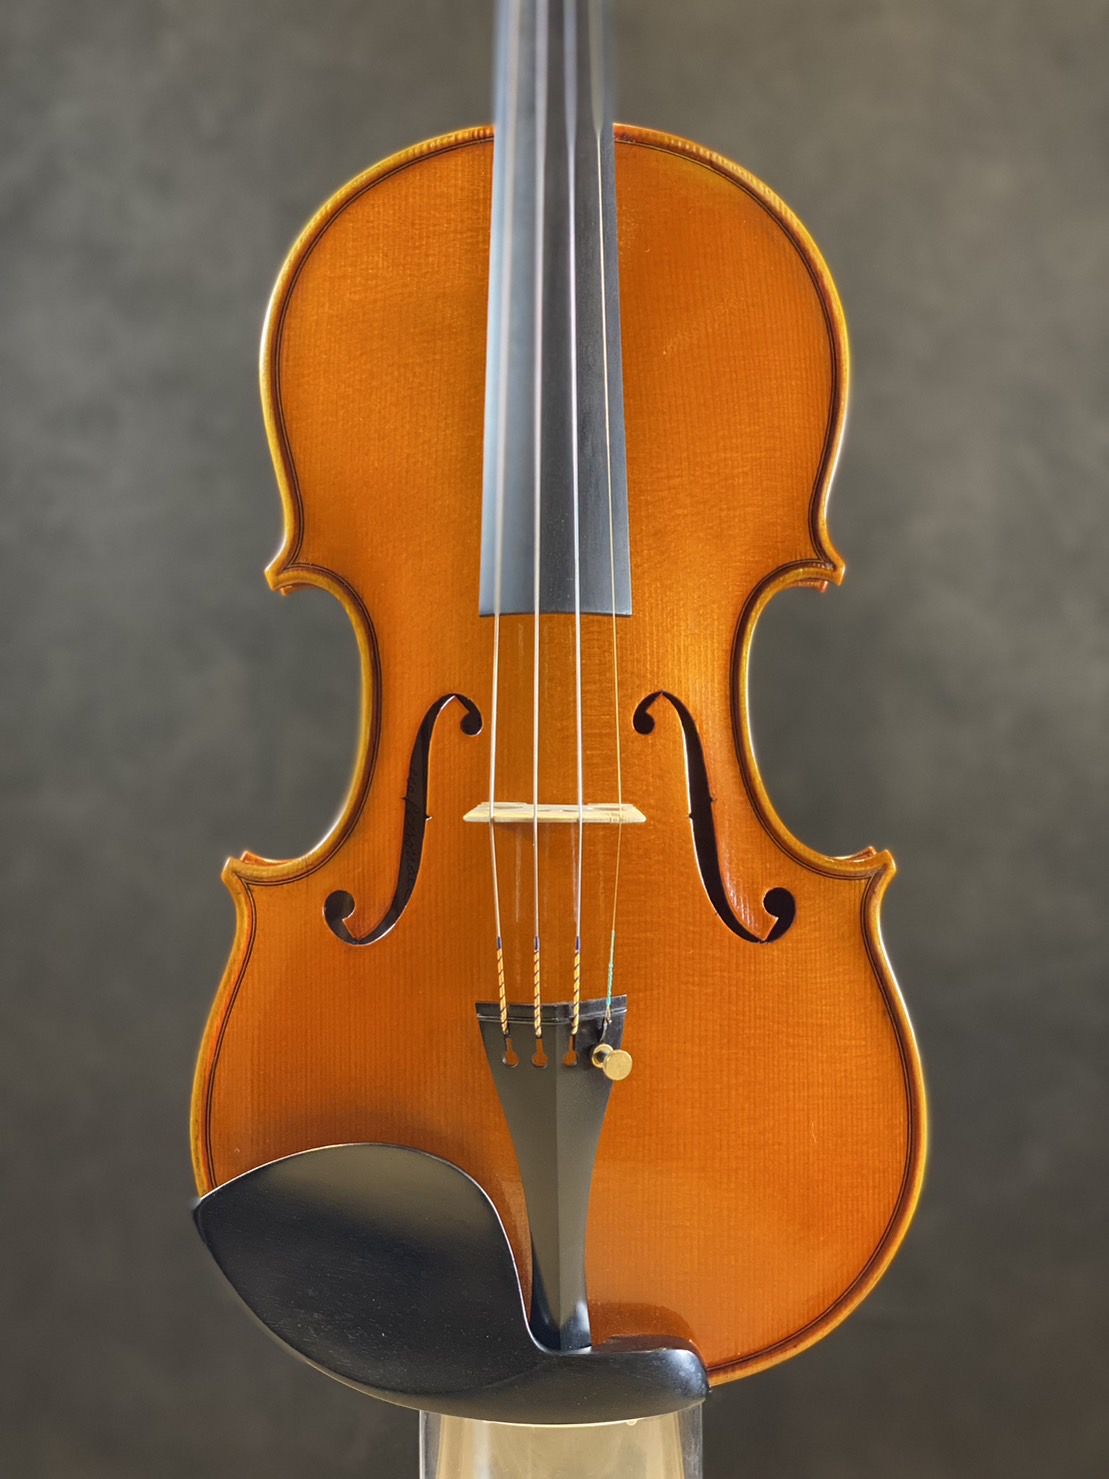 Mario GADDA 1951 年イタリア製バイオリン4/4 - 楽器、器材